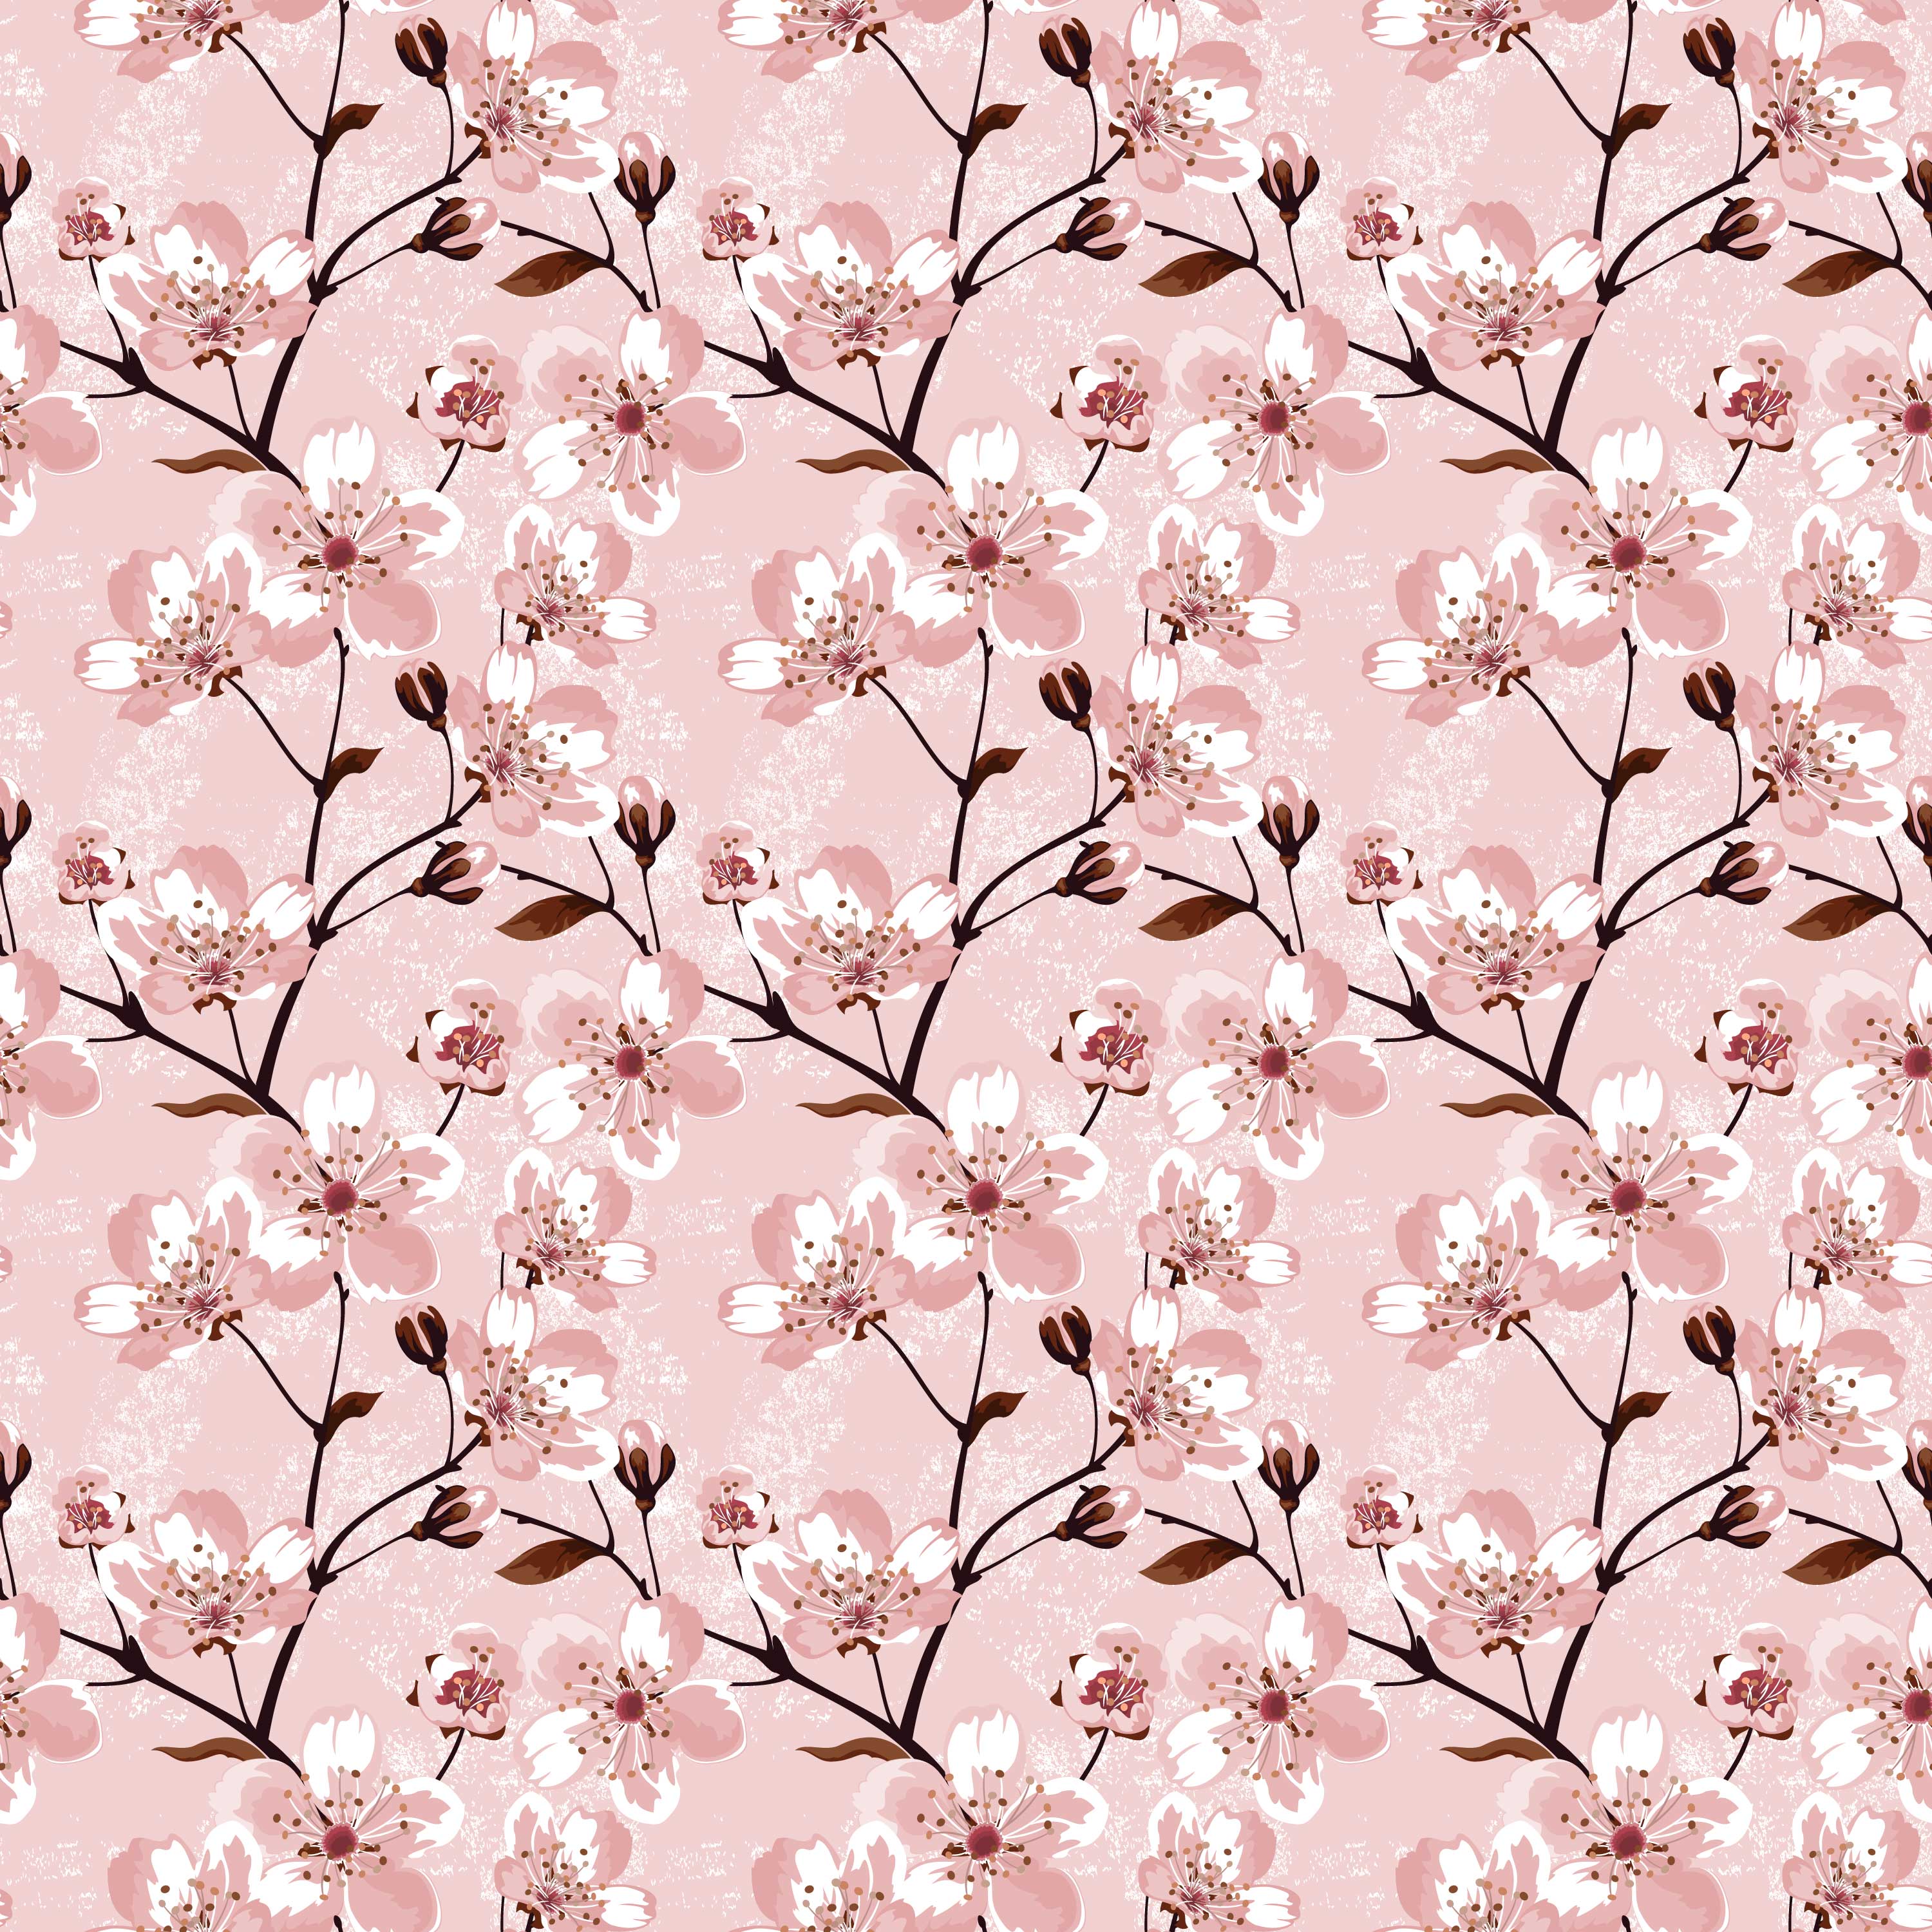 桜 さくら の画像 イラスト フリー素材 No 041 桜壁紙 ピンク 枝葉